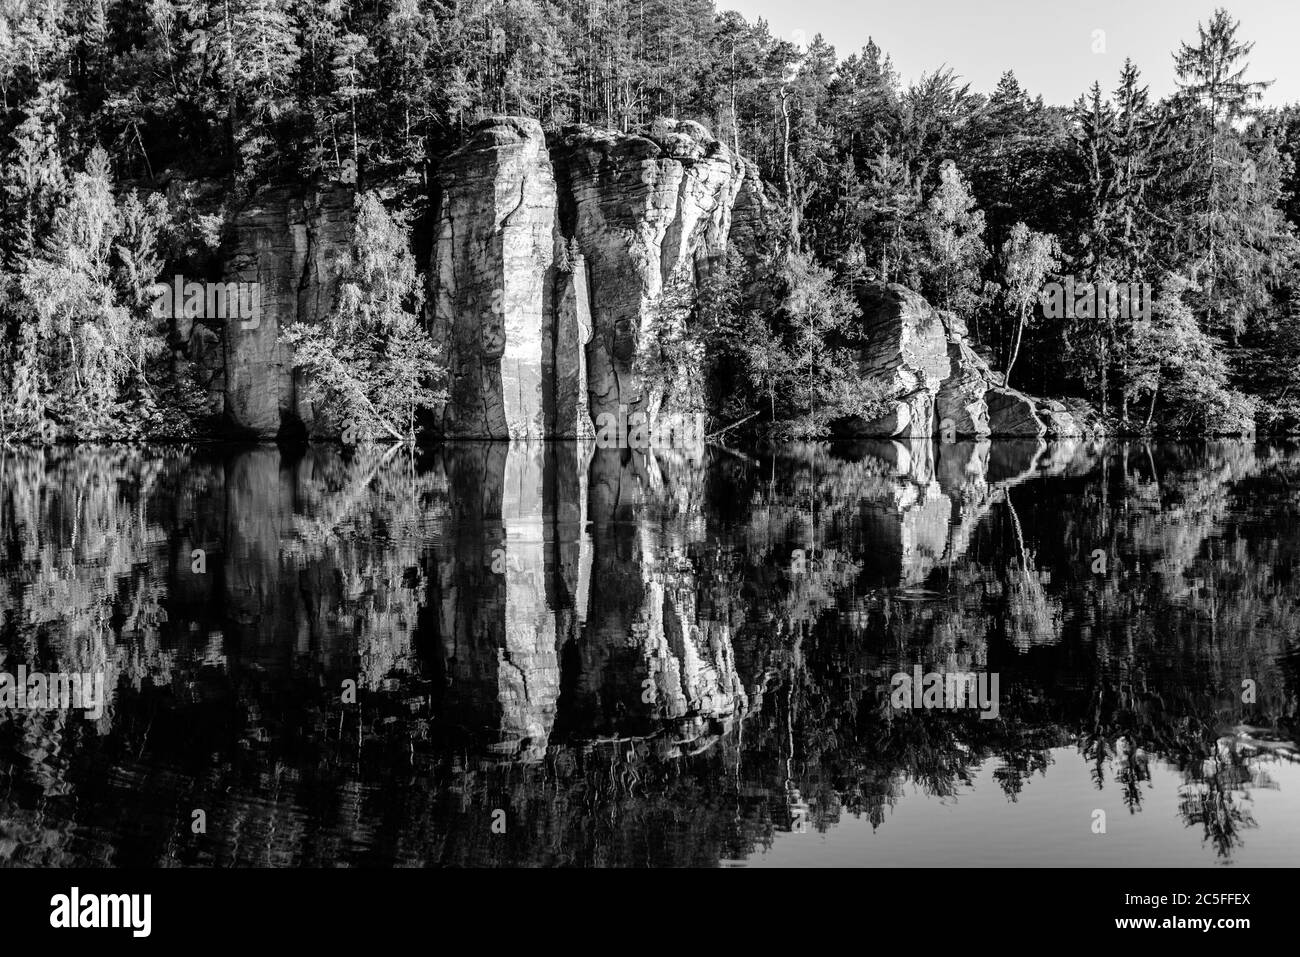 Tours de roche en grès reflétées à Vezak Pond, Tchèque: Vezicky rybnik, Bohemian Paradise, Tchèque: Cesky Raj, République Tchèque. Image en noir et blanc. Banque D'Images